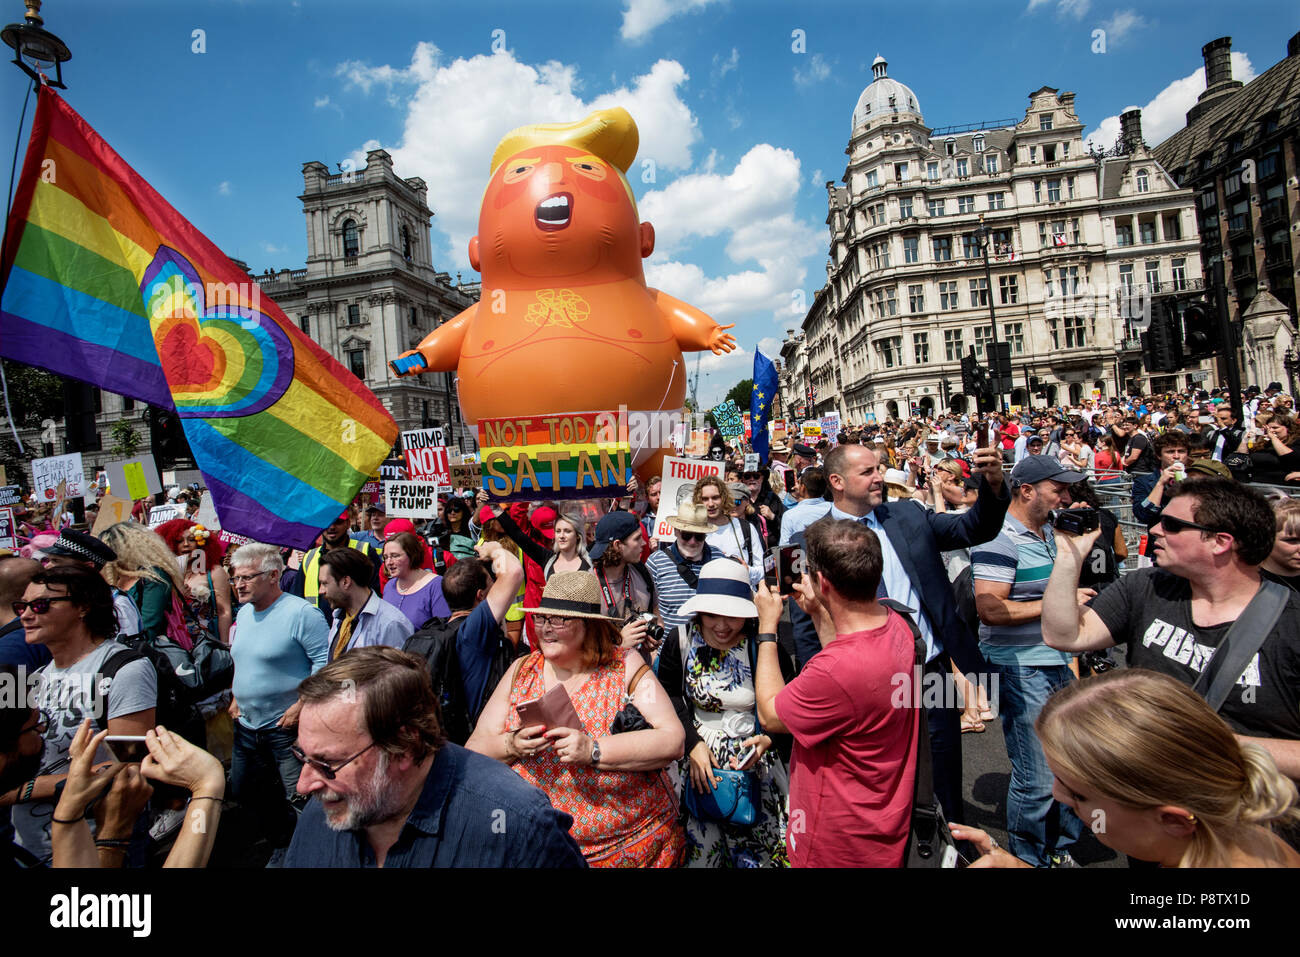 Le président Trump démonstrations, Londres, Angleterre, Royaume-Uni. 13 juillet 2018 manifestations anti-NOUS Président Trump dans Parliament Square, Westminster, Londres Angleterre aujourd'hui. Crédit : BRIAN HARRIS/Alamy Live News Banque D'Images